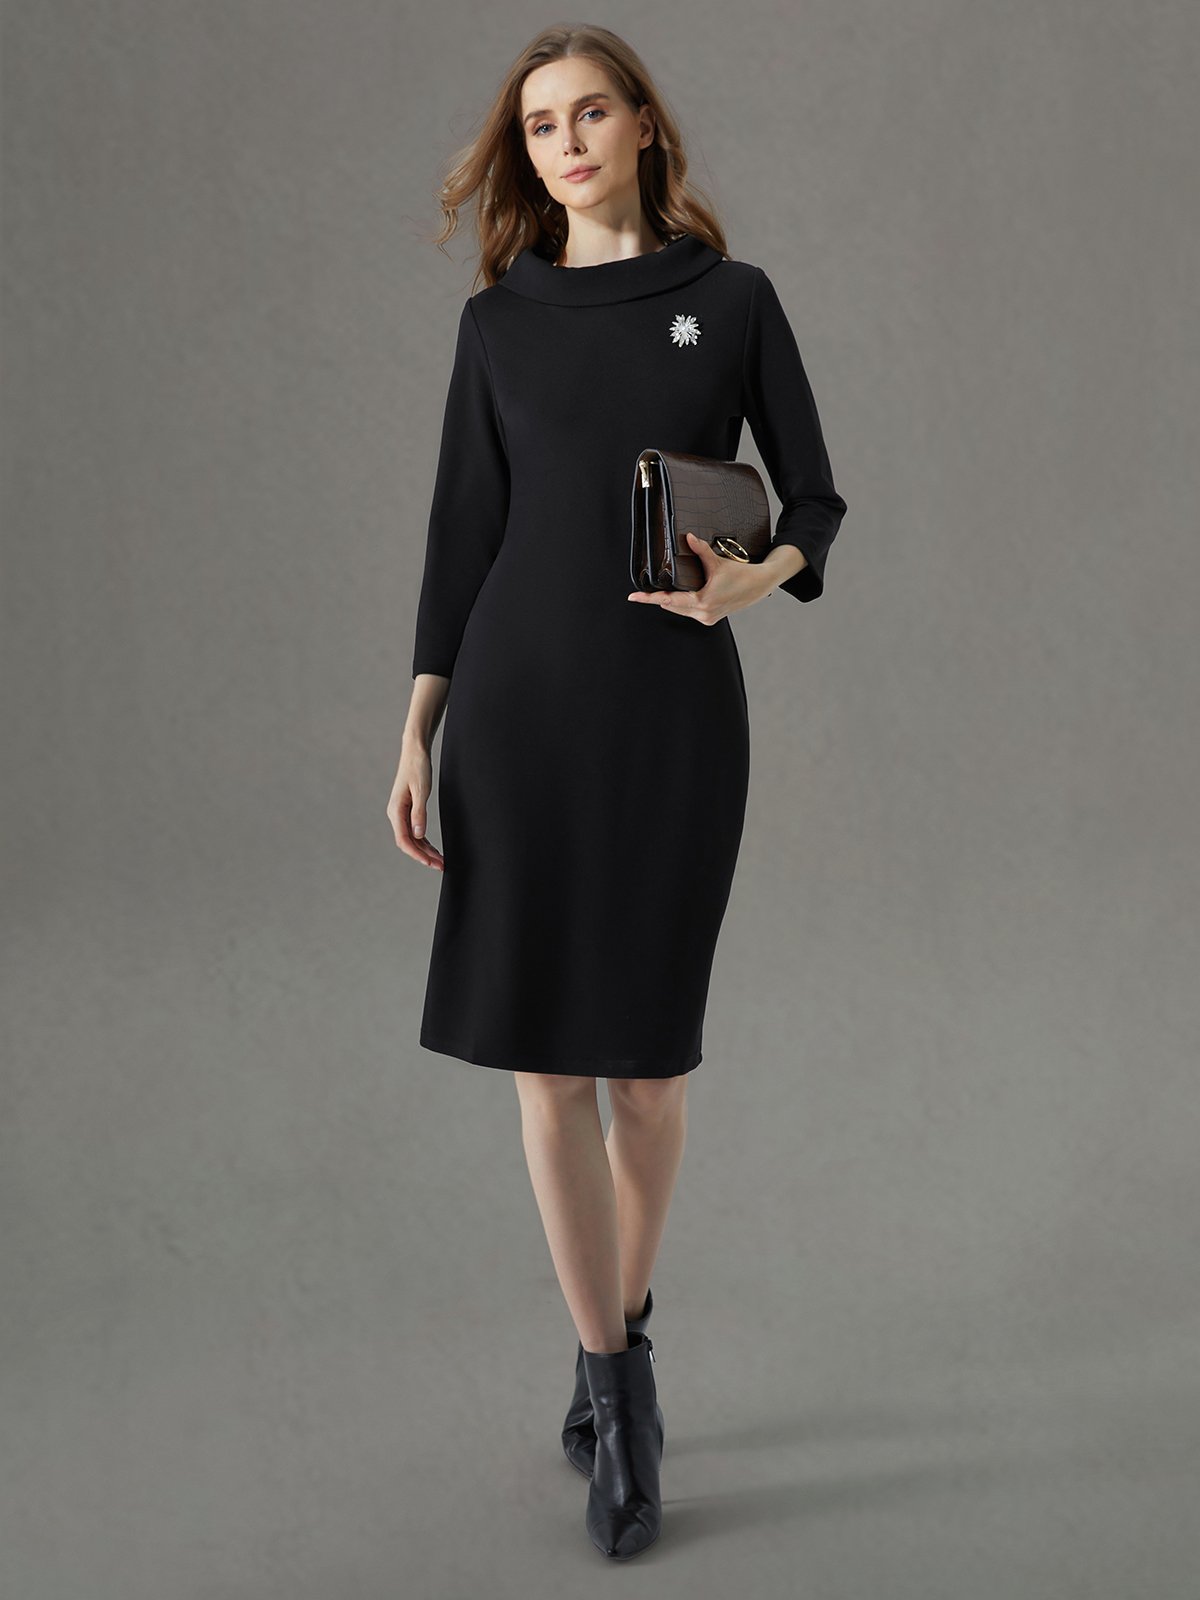 Elegant Regelmäßige Passform Stehkragen Unifarben Kleid mit Brosche